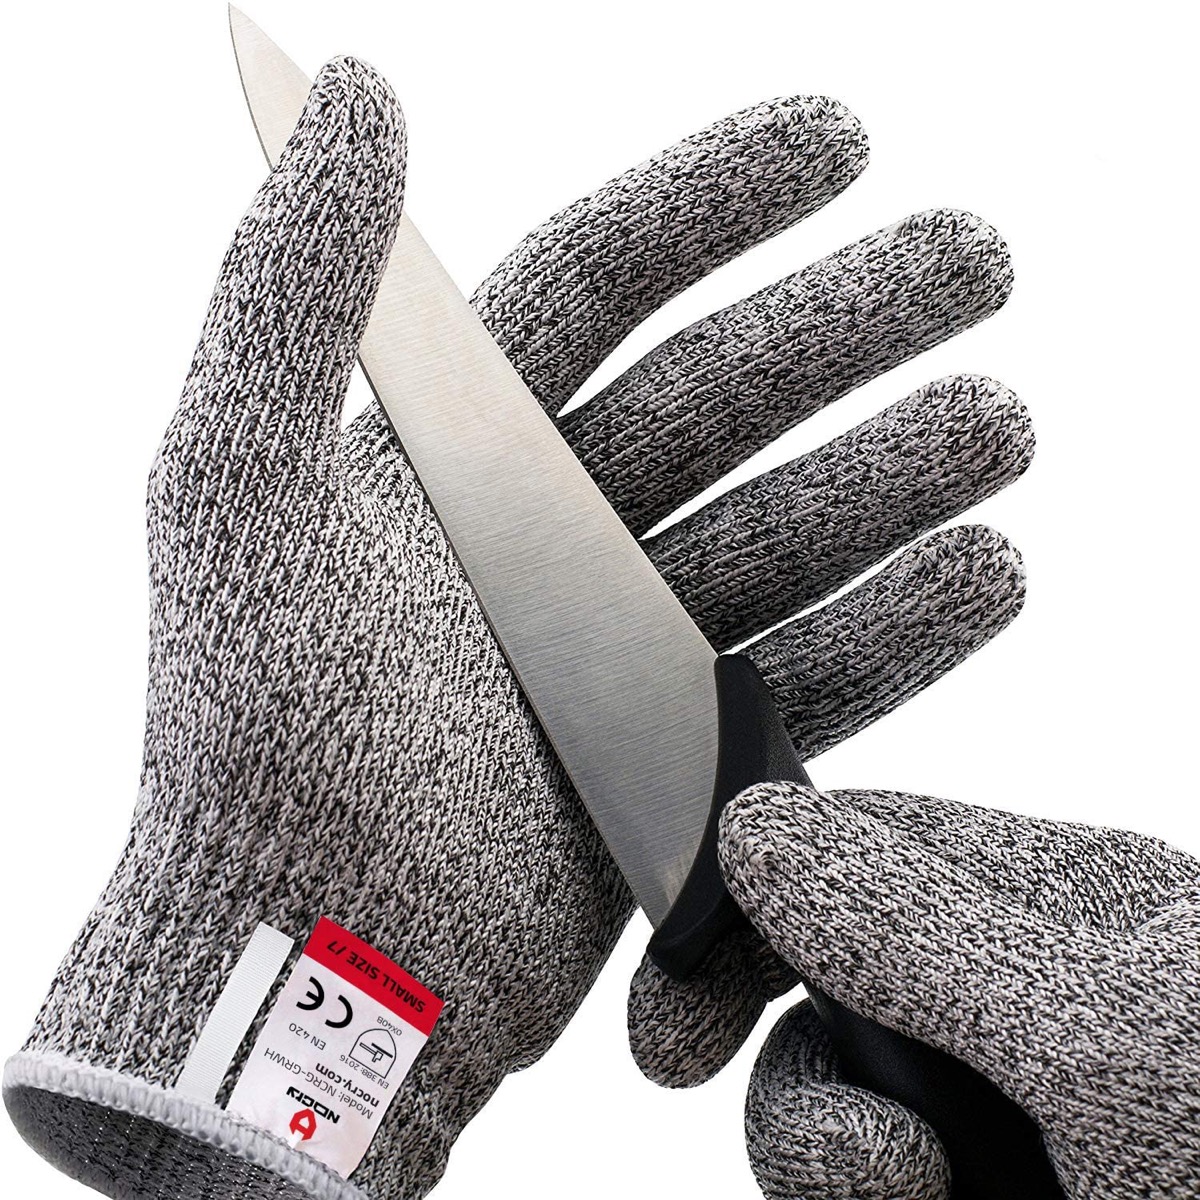 gray gloves holding knife